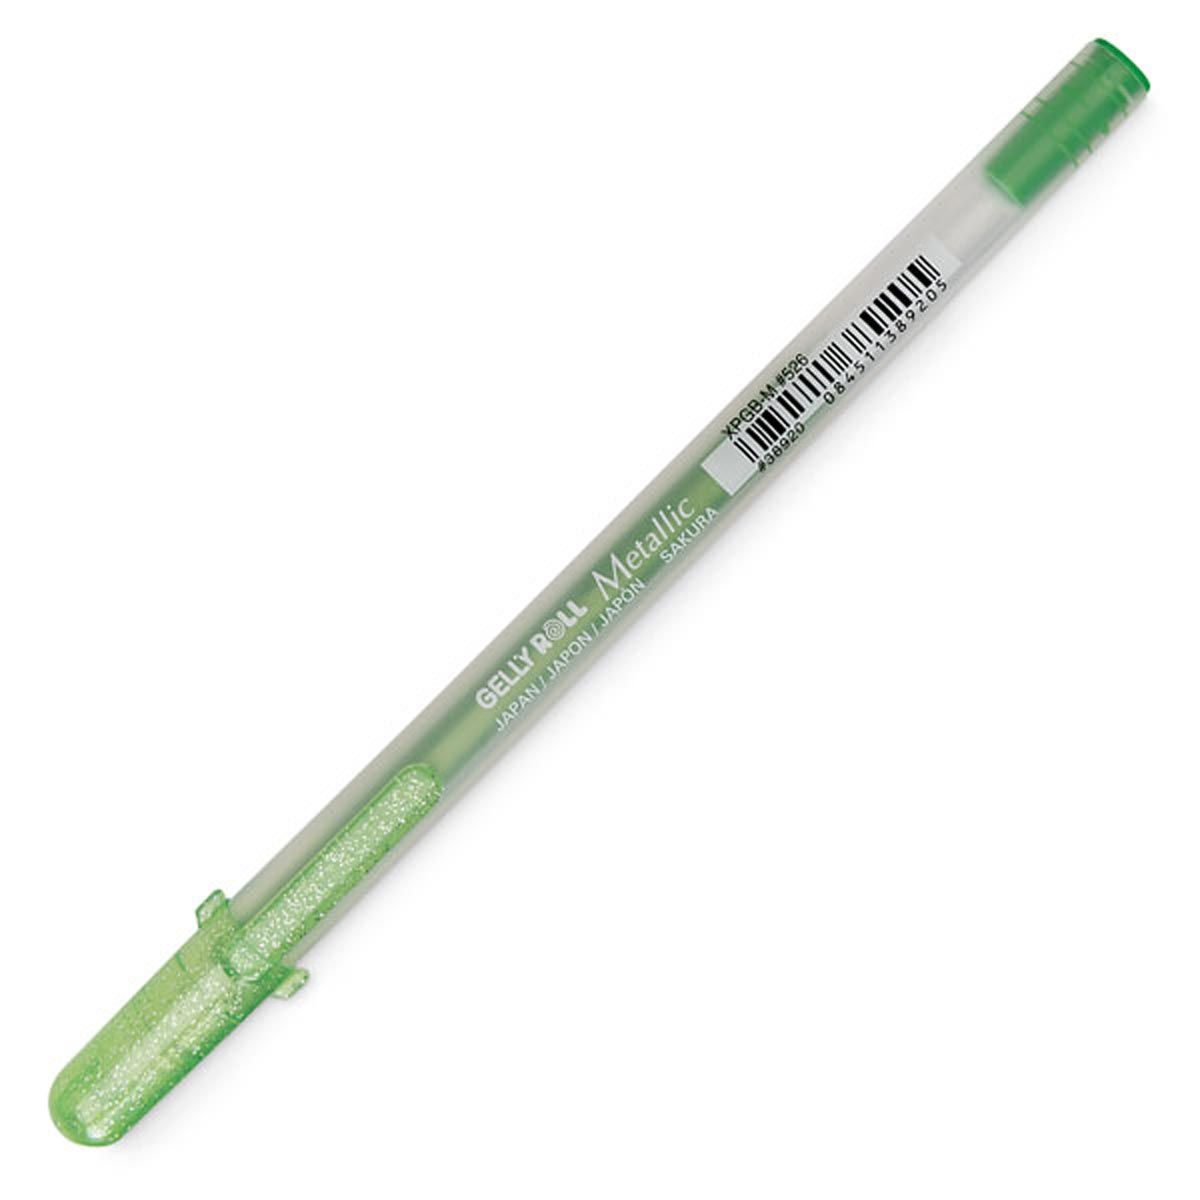 Gelly Roll Metallic Gel Pen - Green